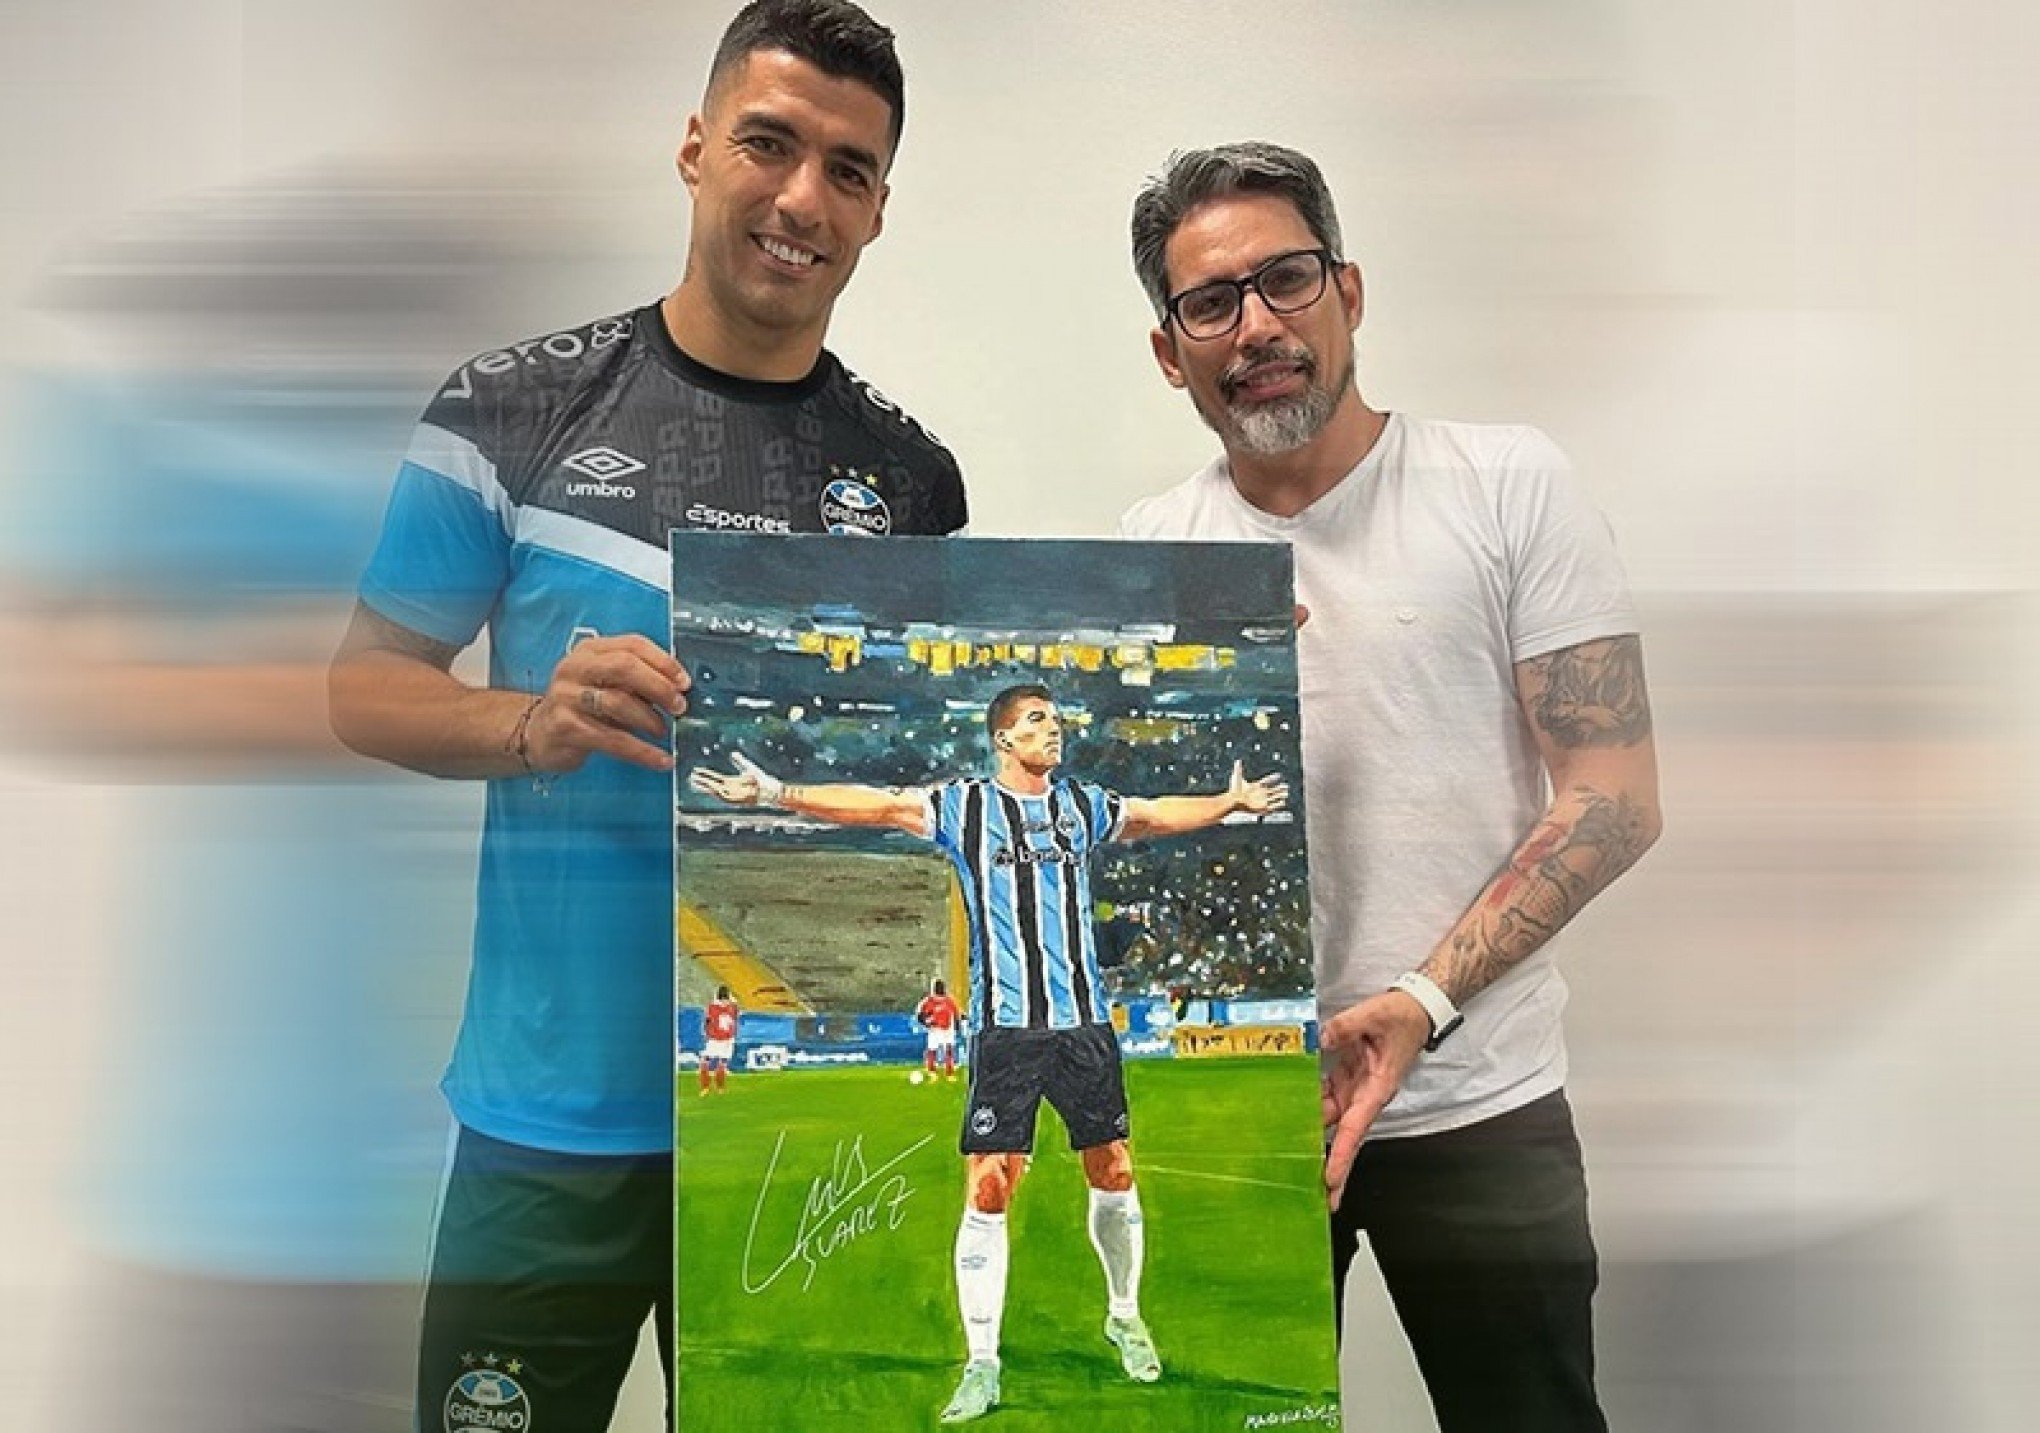 CATÁSTROFE NO RS: Mauro Vila Real vai leiloar quadro com autógrafo de Luis Suárez para ajudar artistas